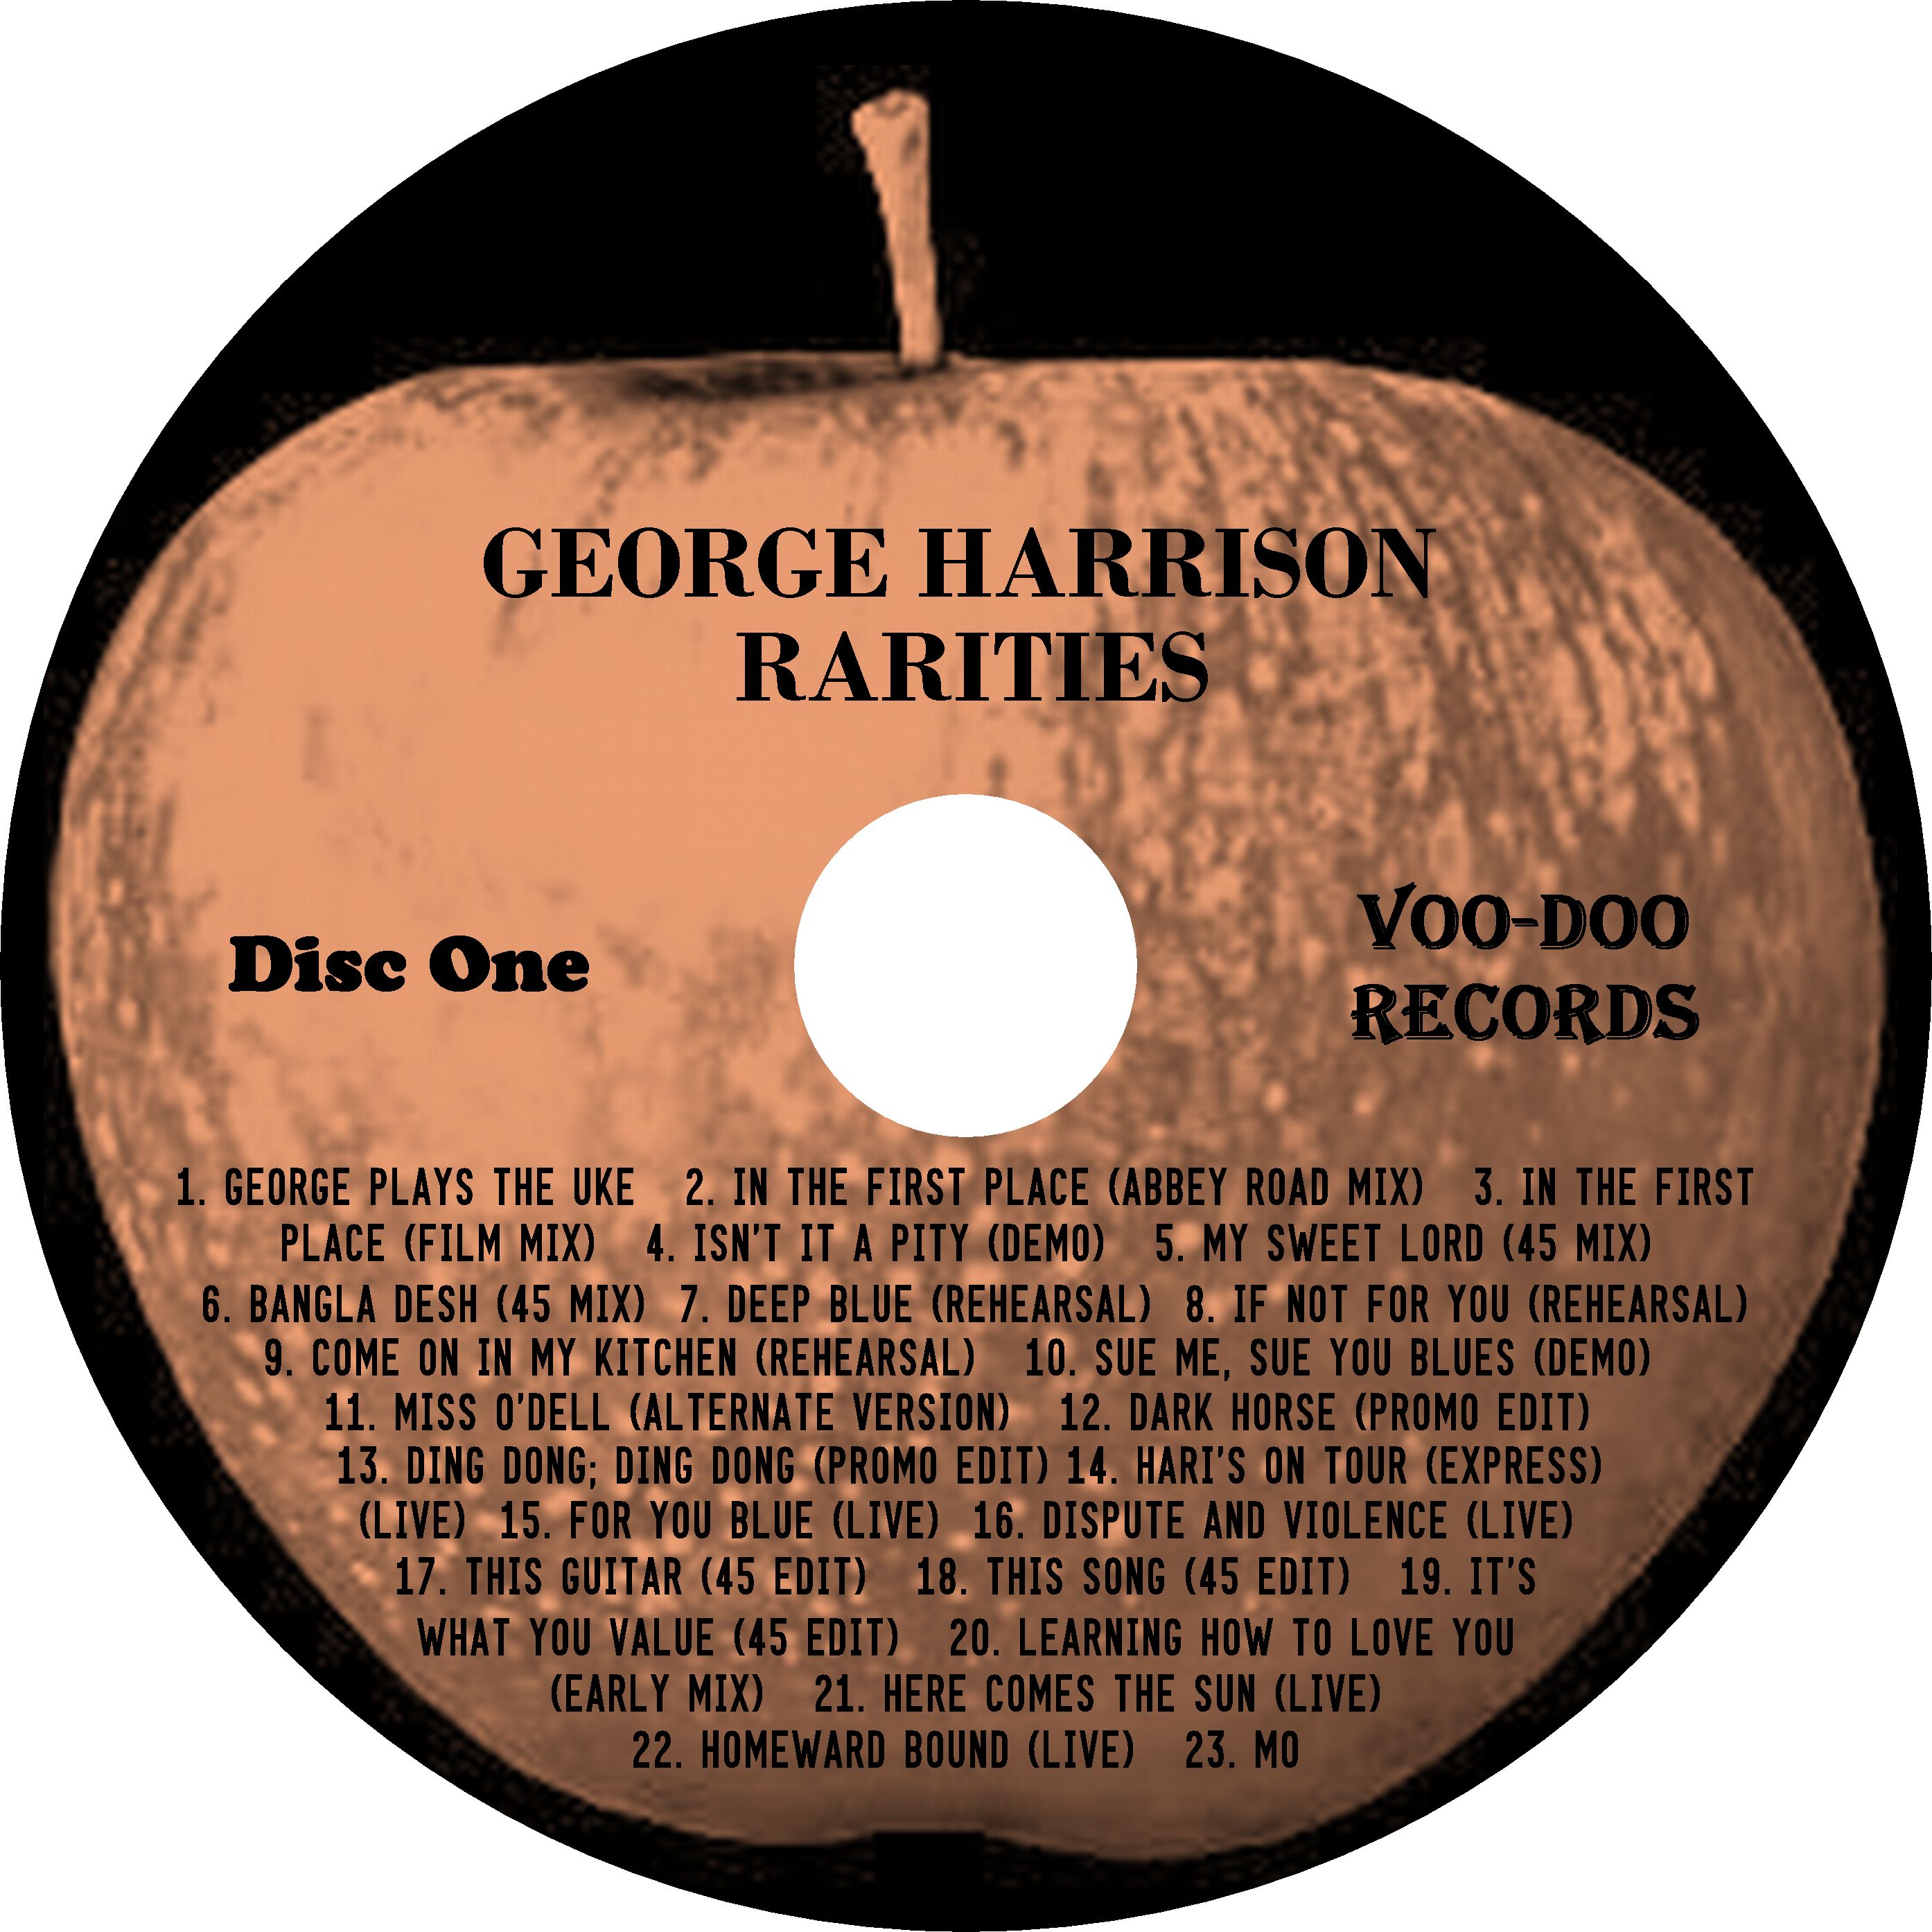 GeorgeHarrison-Rarities (3).jpg